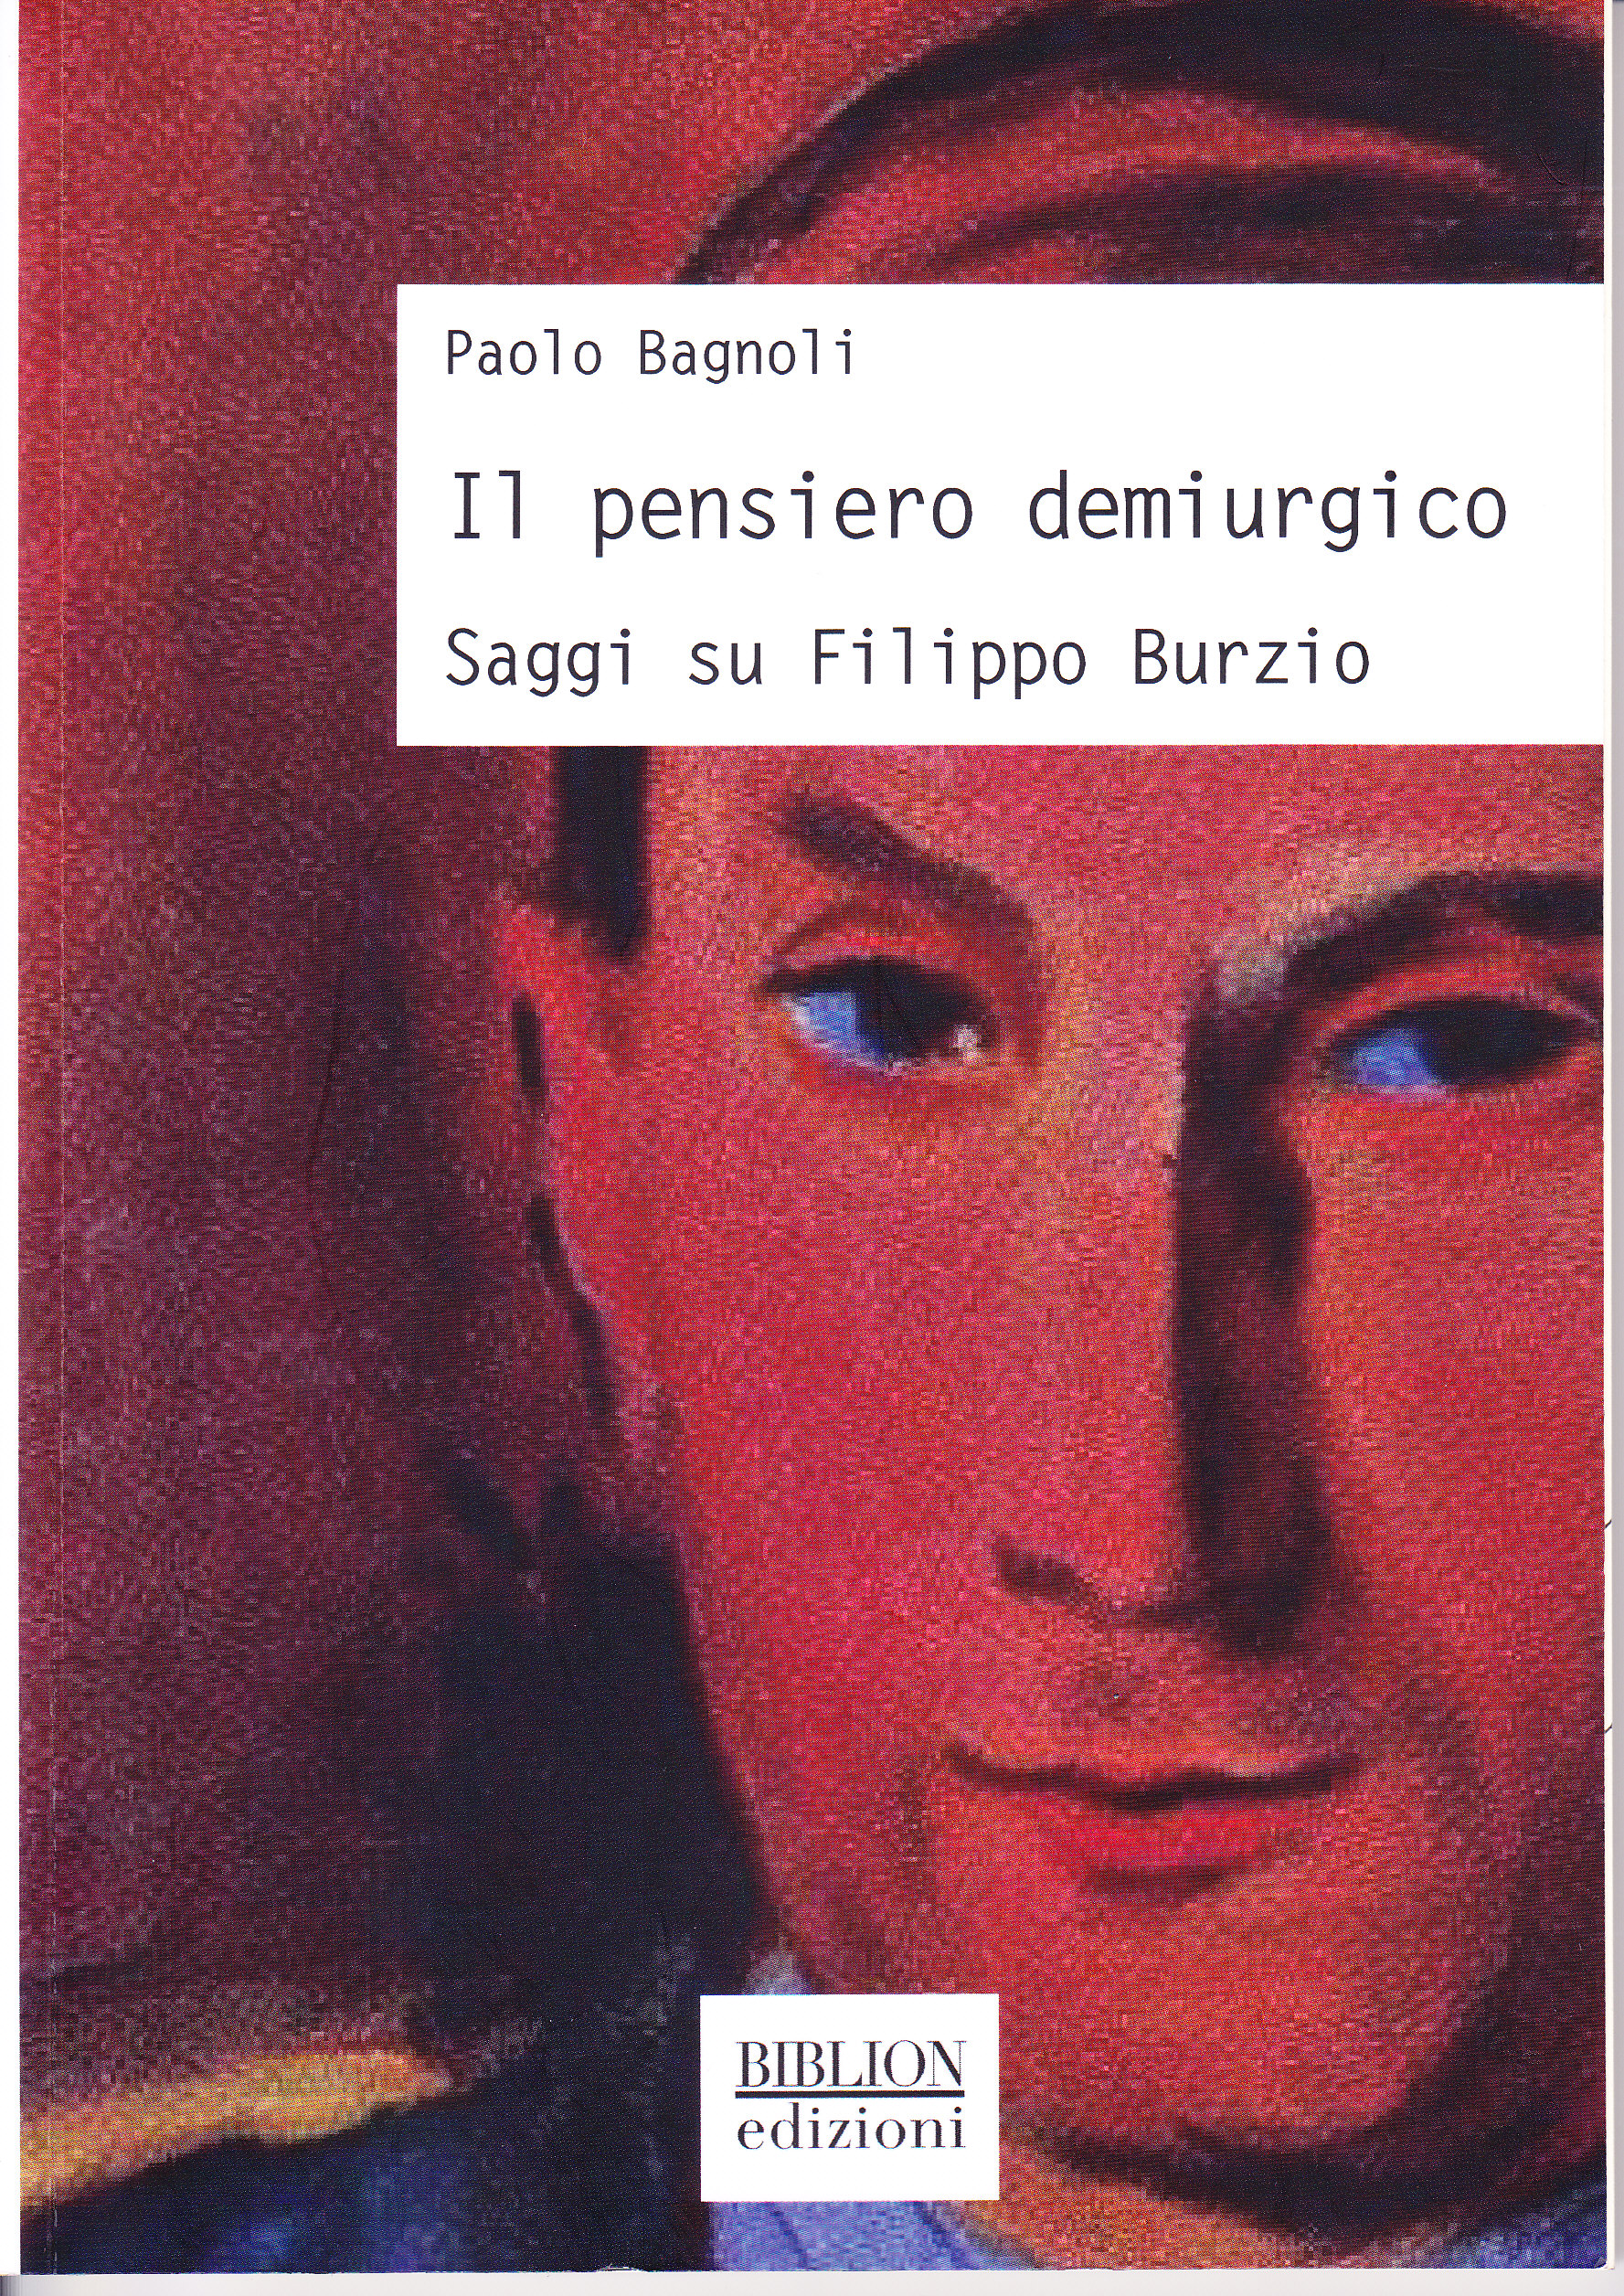 Paolo BAGNOLI, Il pensiero demiurgico. Saggi su Filippo Burzio  - Milano, Biblion Edizioni, 2018.